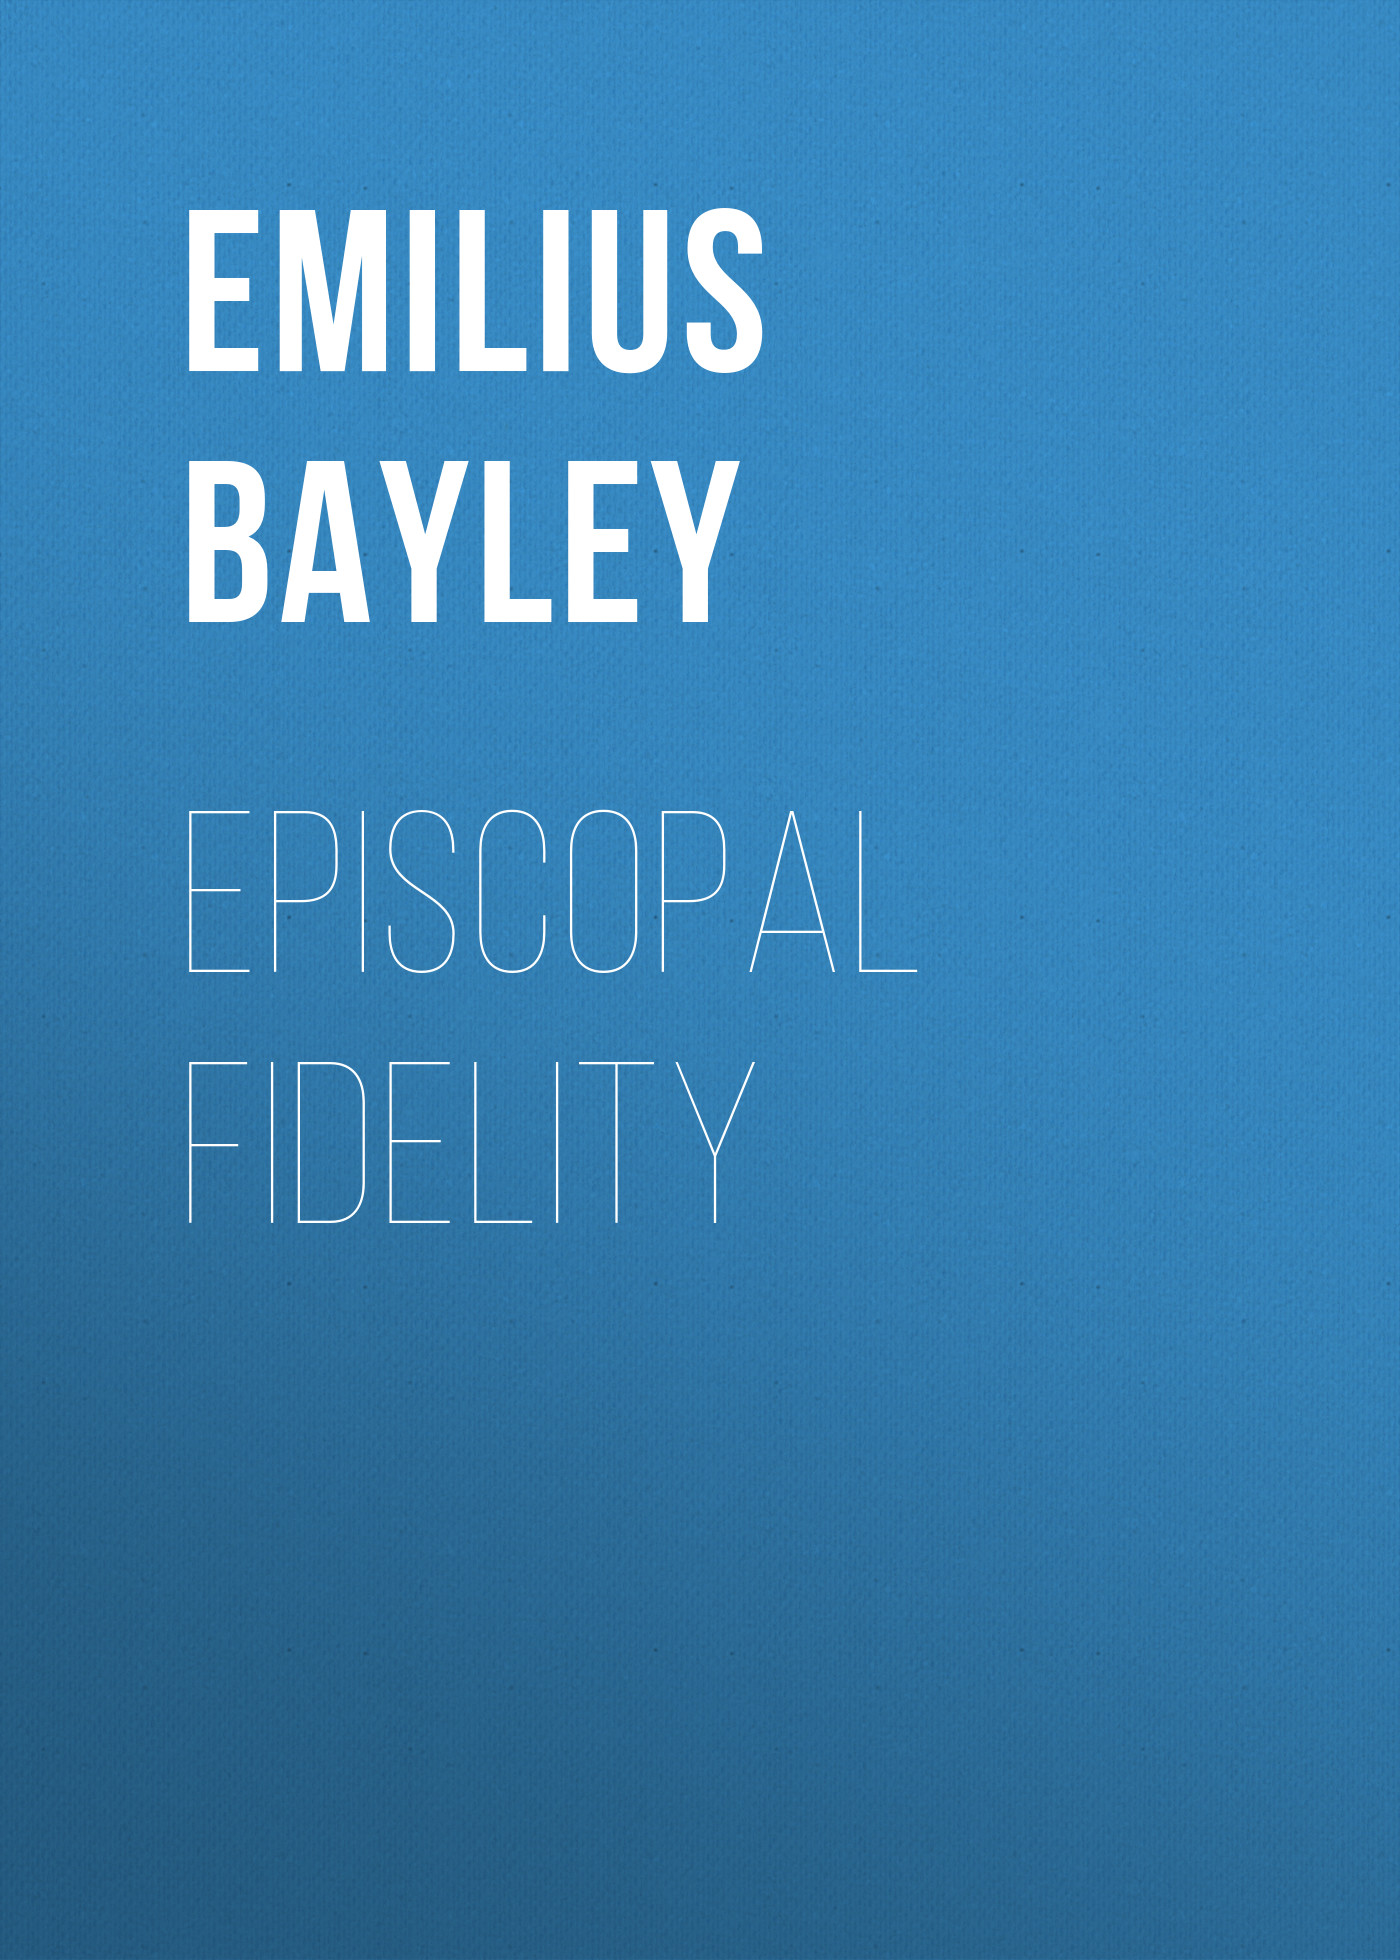 Книга Episcopal Fidelity из серии , созданная Emilius Bayley, может относится к жанру Зарубежная старинная литература, Зарубежная классика. Стоимость электронной книги Episcopal Fidelity с идентификатором 24177644 составляет 0 руб.